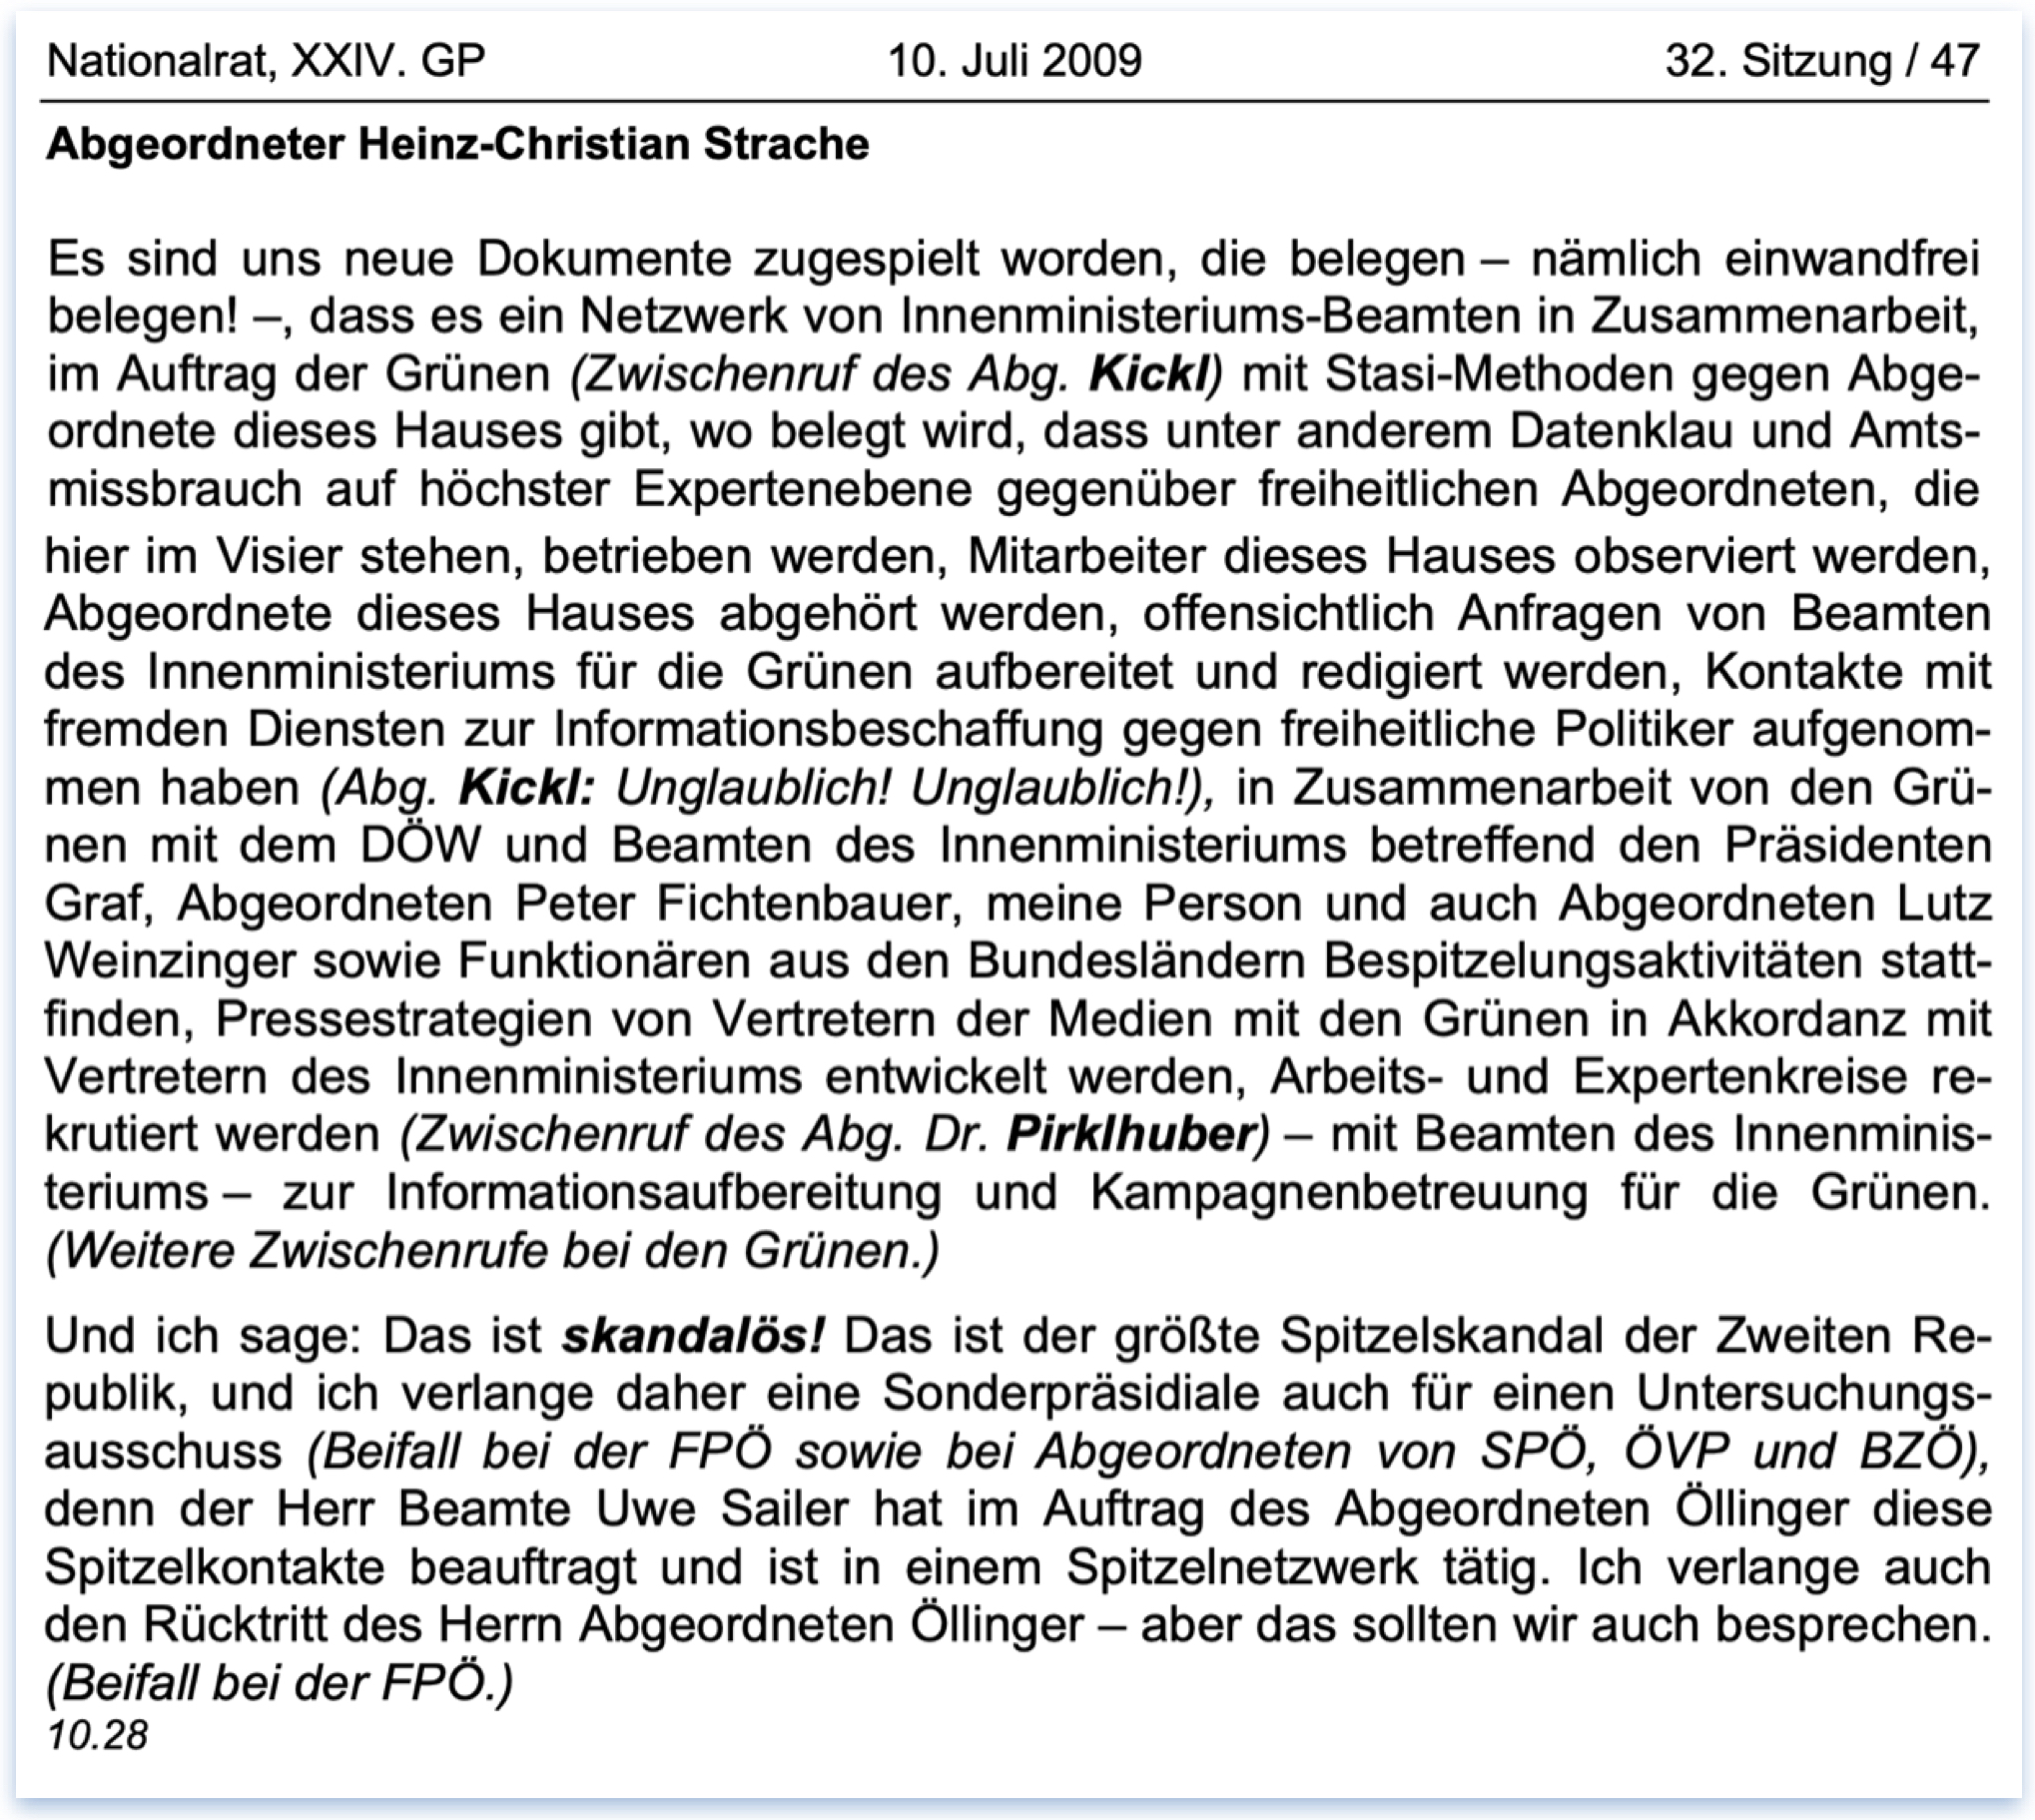 Stenographisches Protokoll Strache: "Der größte Spitzelskandal der Zweiten Republik" (NR 10.7.2009, S. 46f)